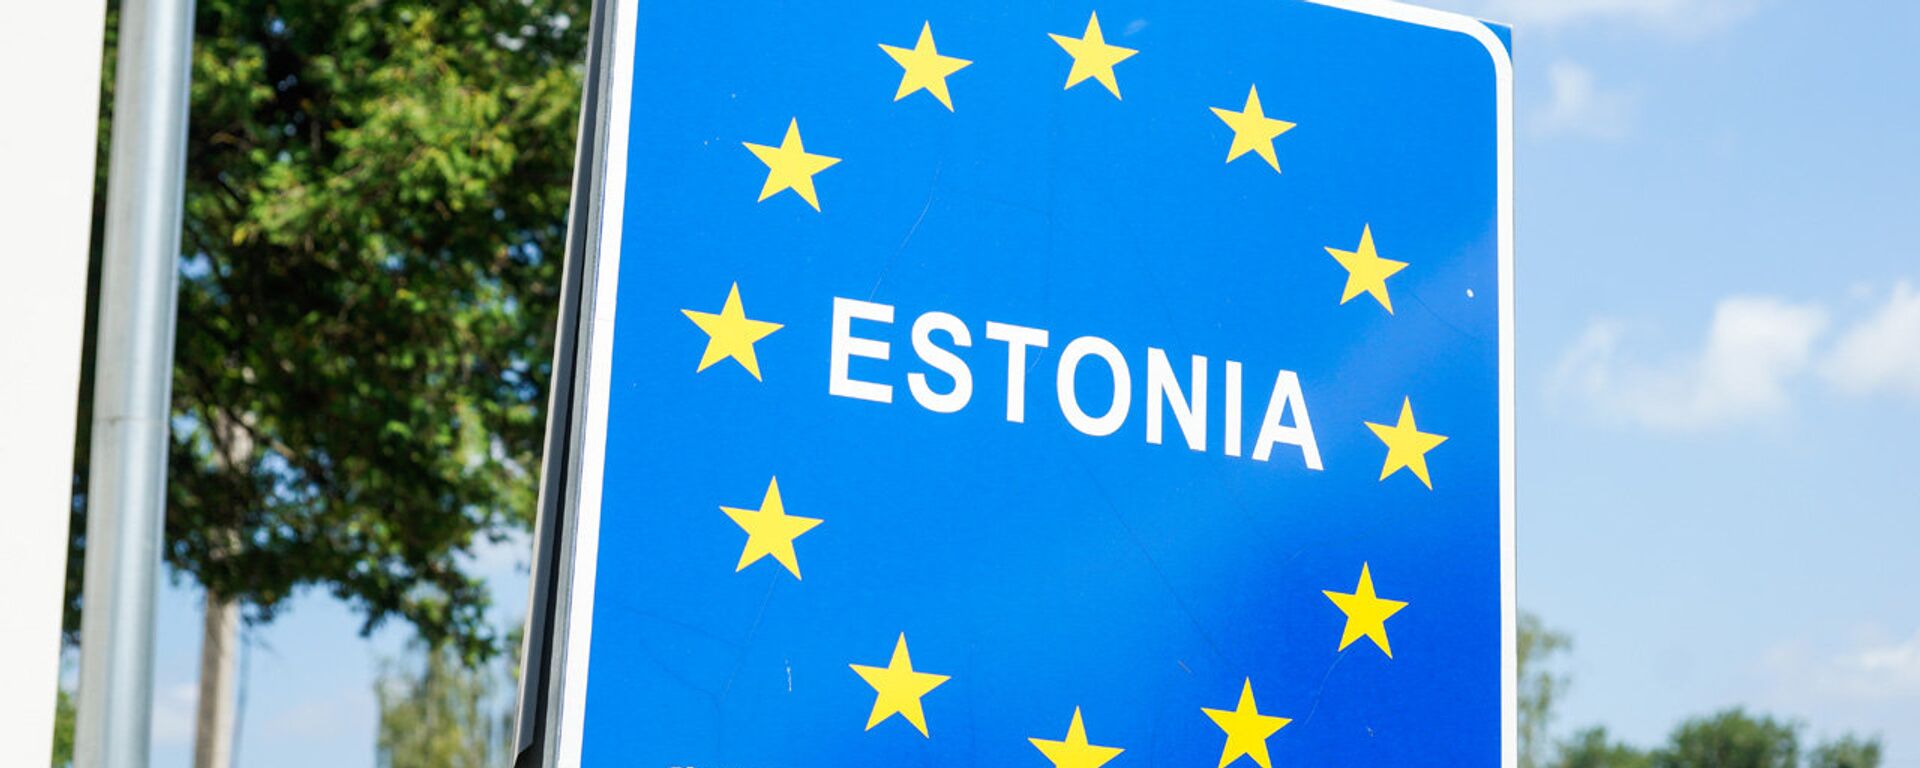 Дорожный знак Эстония на границе - Sputnik Латвия, 1920, 02.08.2021